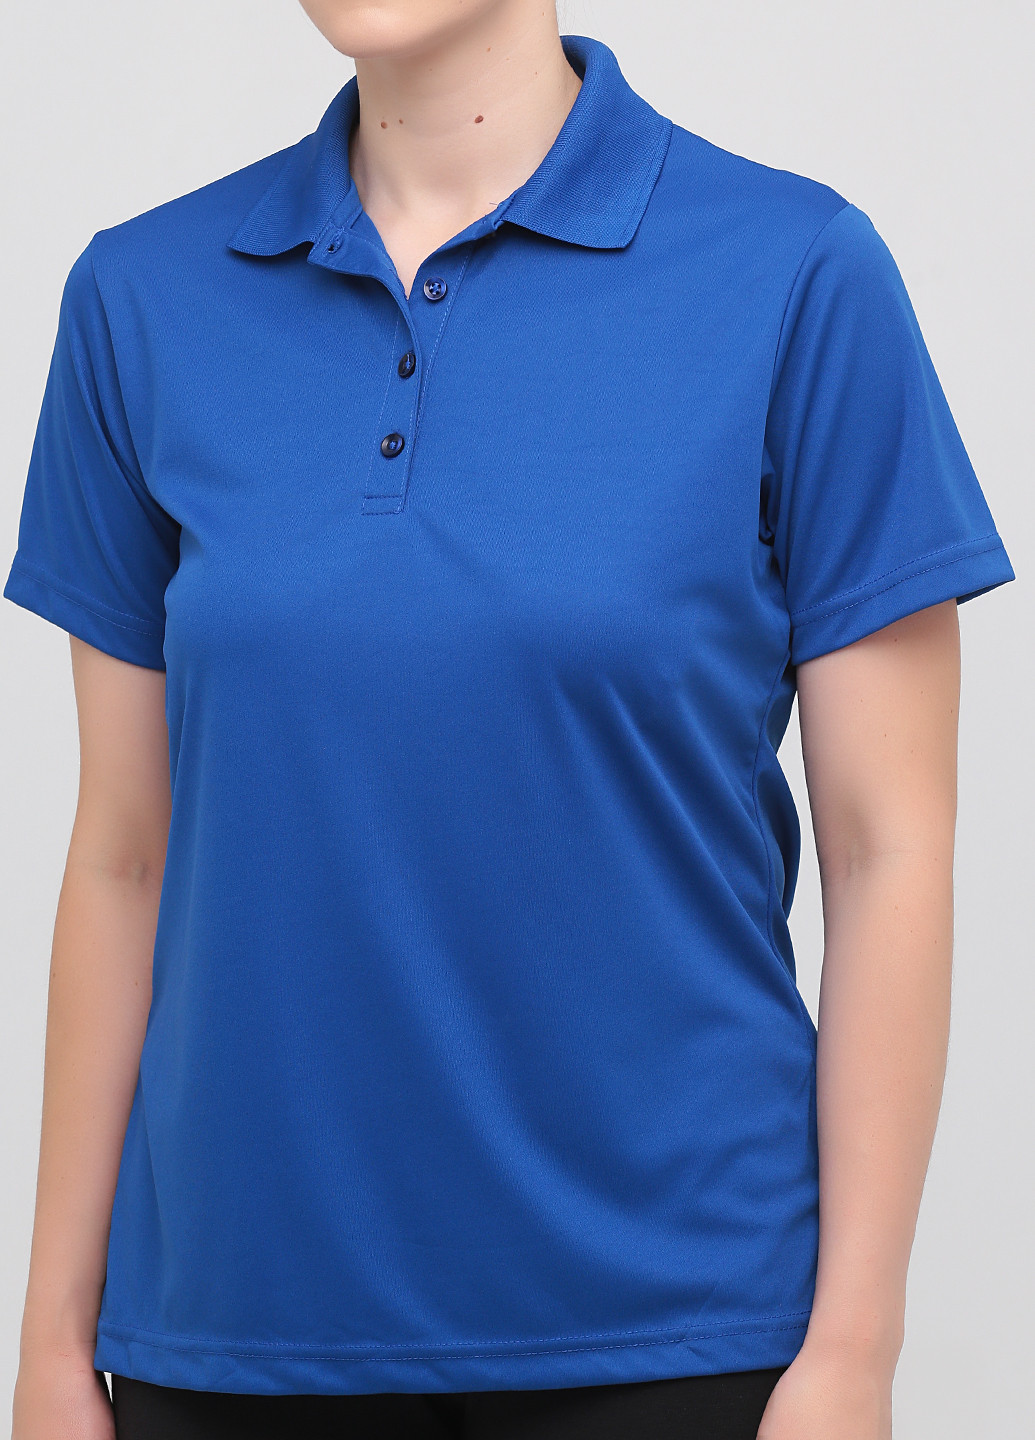 Светло-синяя женская футболка-поло Paragon однотонная